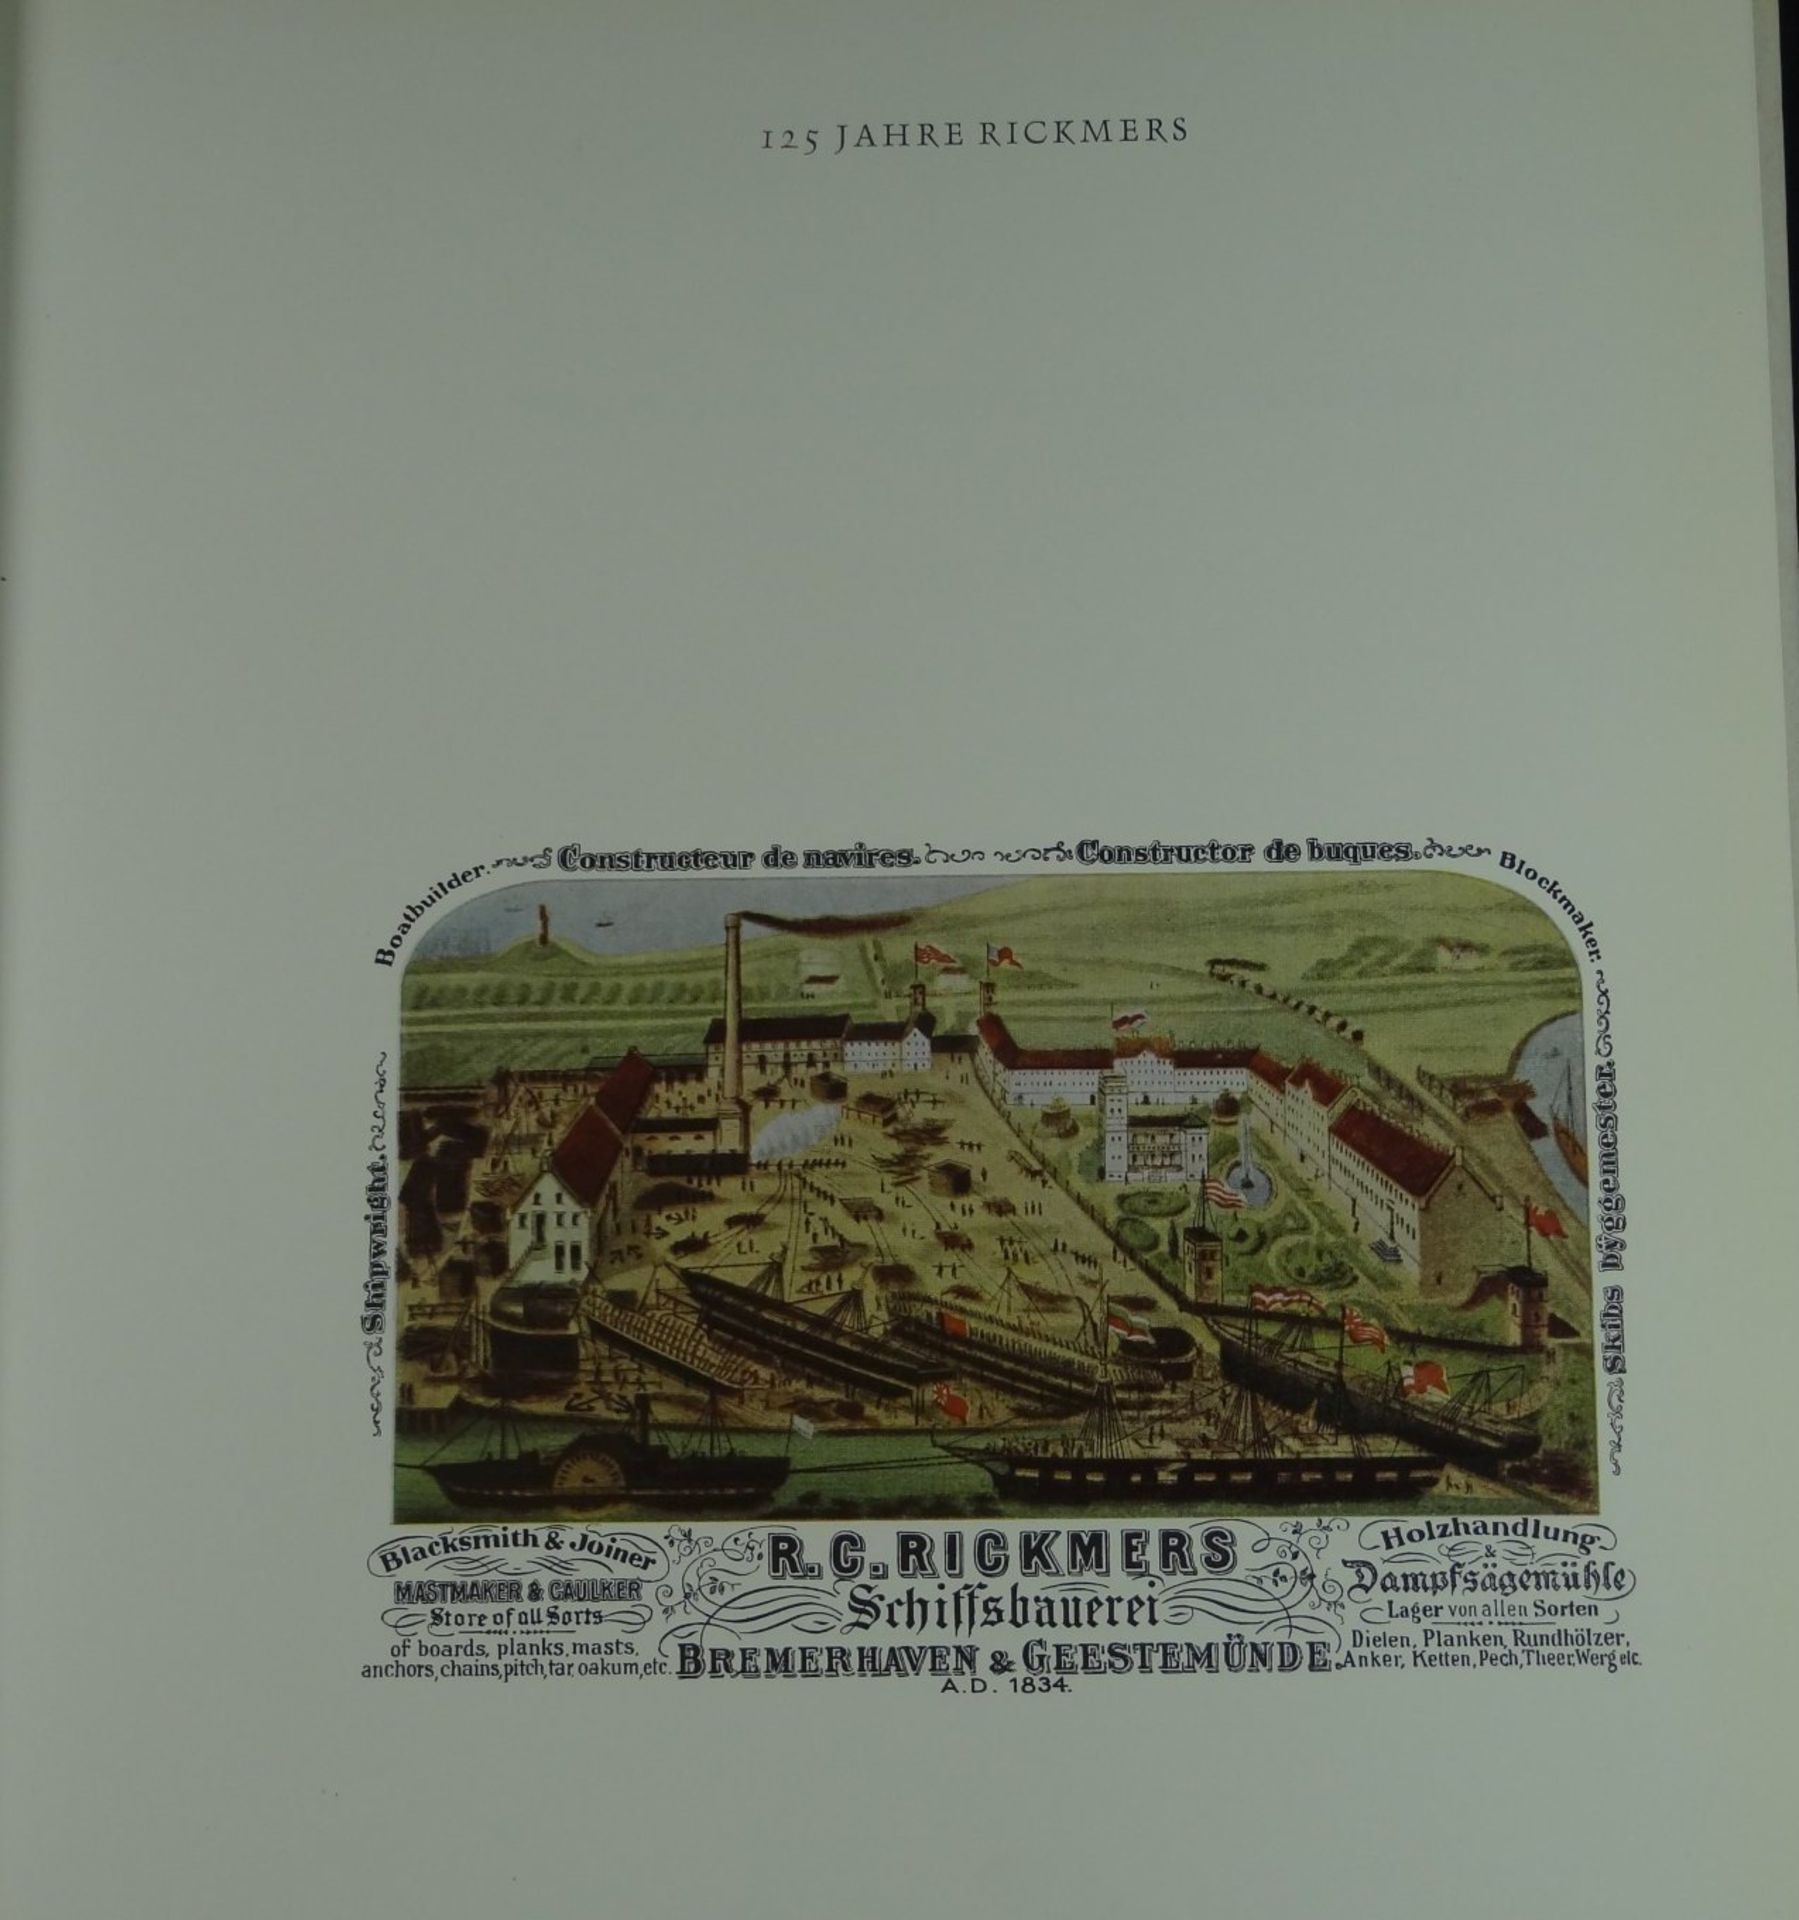 Firmenschrift "125 Jahre Rickmers Werft, Bremerhaven", 27x23 cm - Bild 2 aus 7